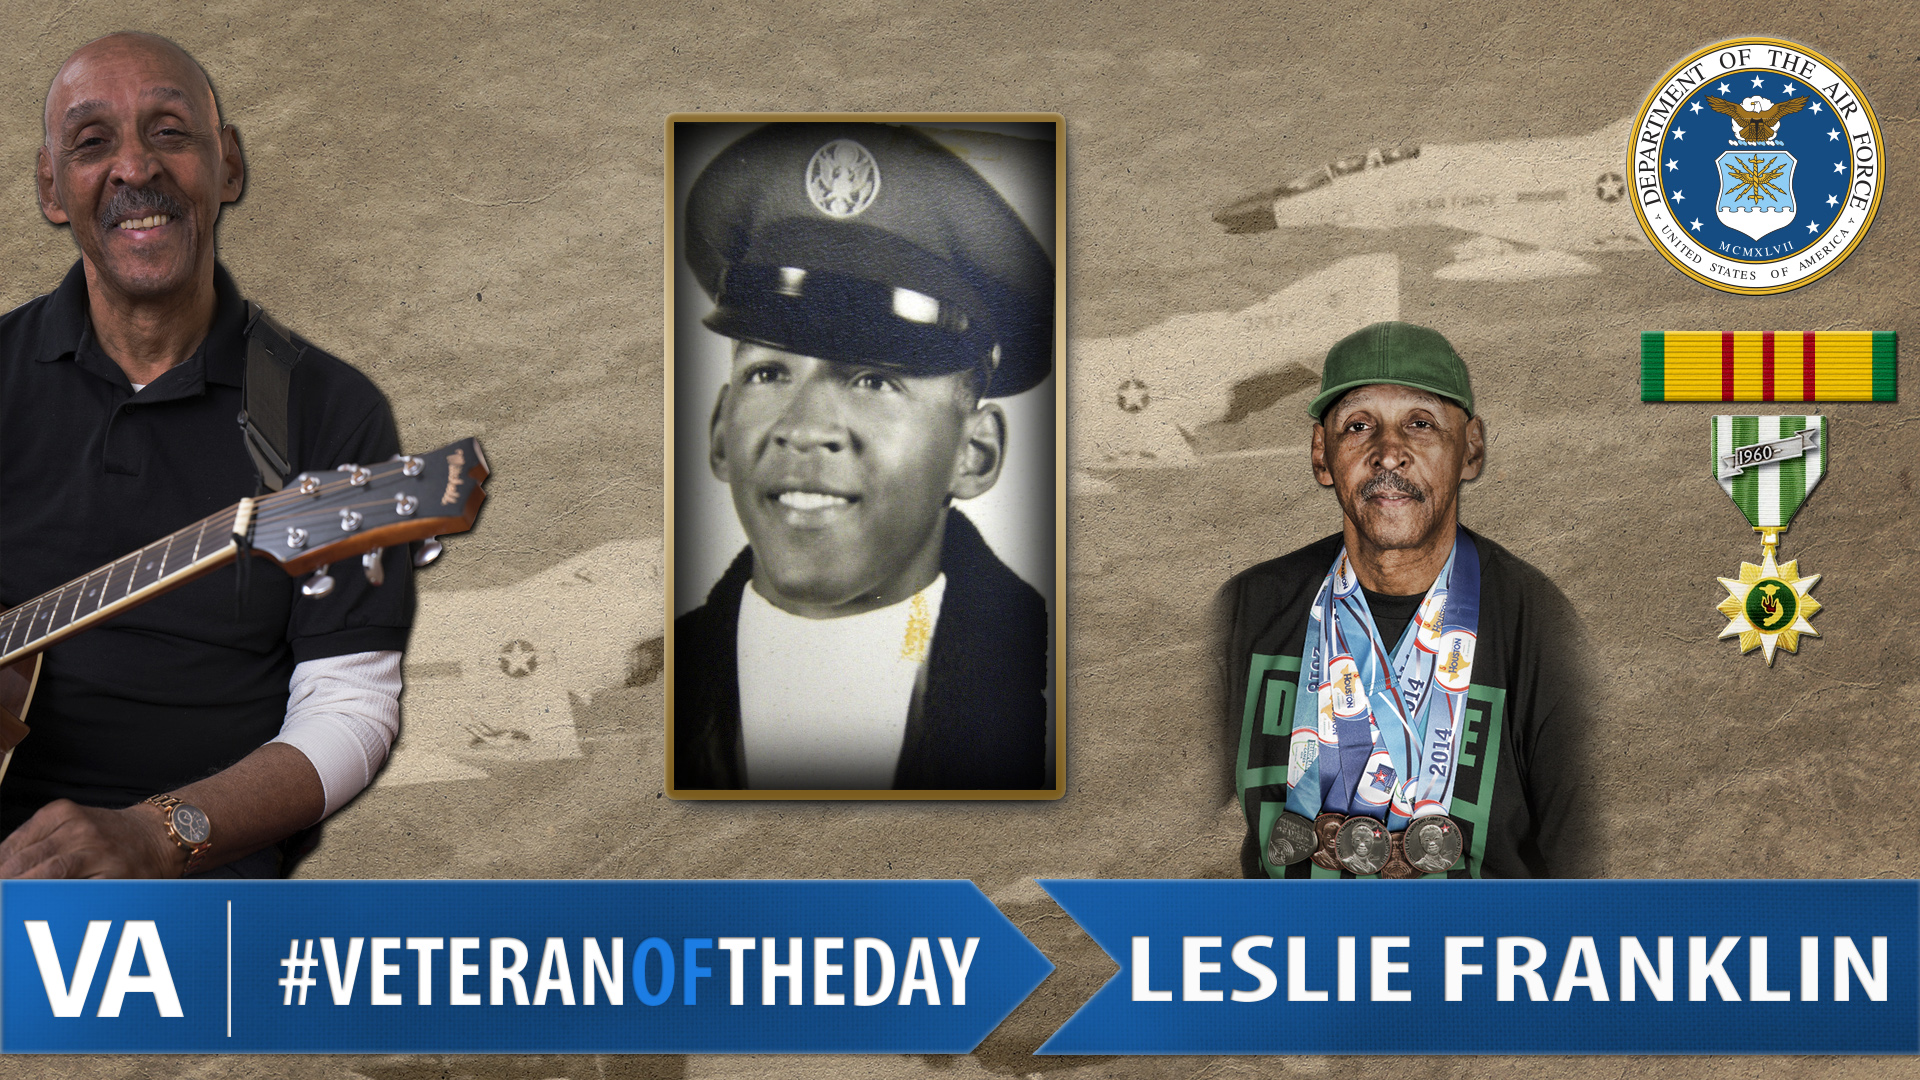 Leslie Franklin - Veteran of the Day